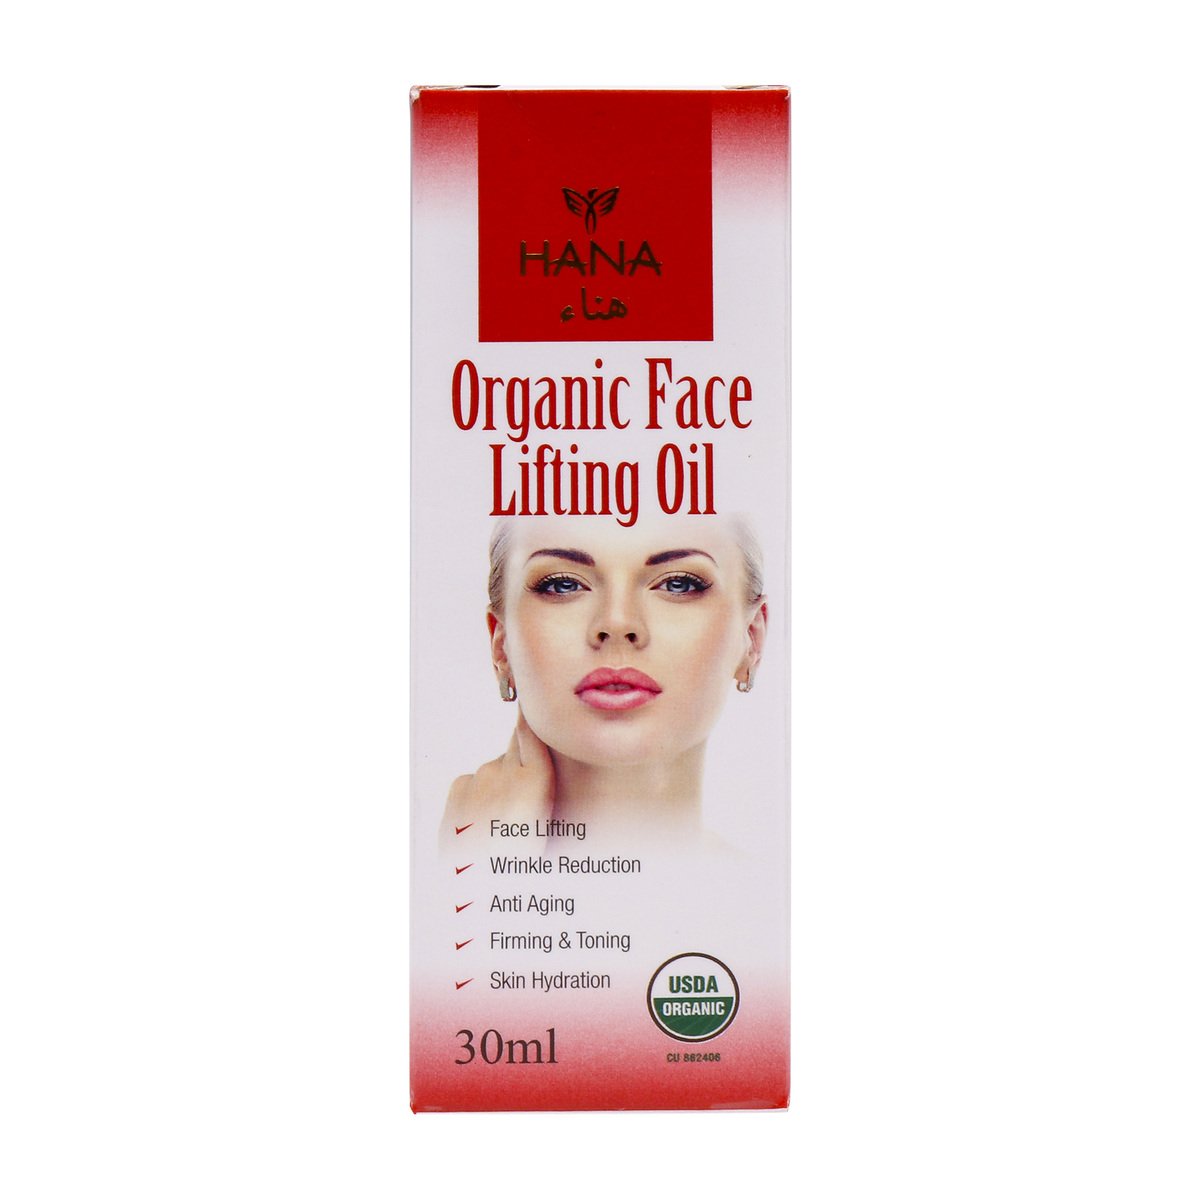 Hana Organic Face Lifting Oil 30ml